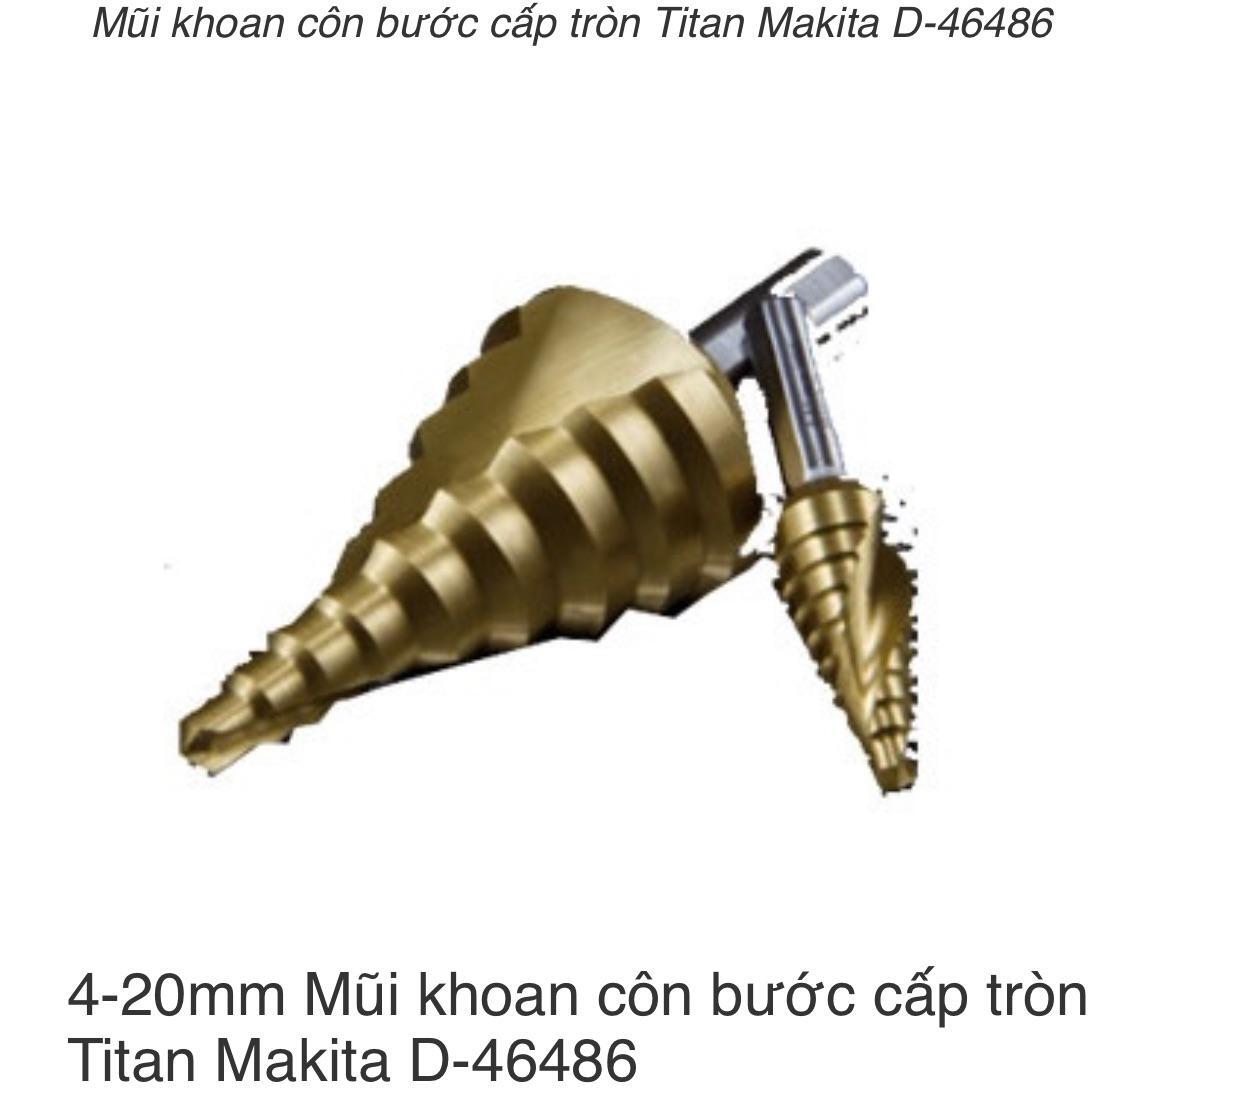 Mũi khoan côn bước cấp tròn Titan Makita D-46486, 4-20mm